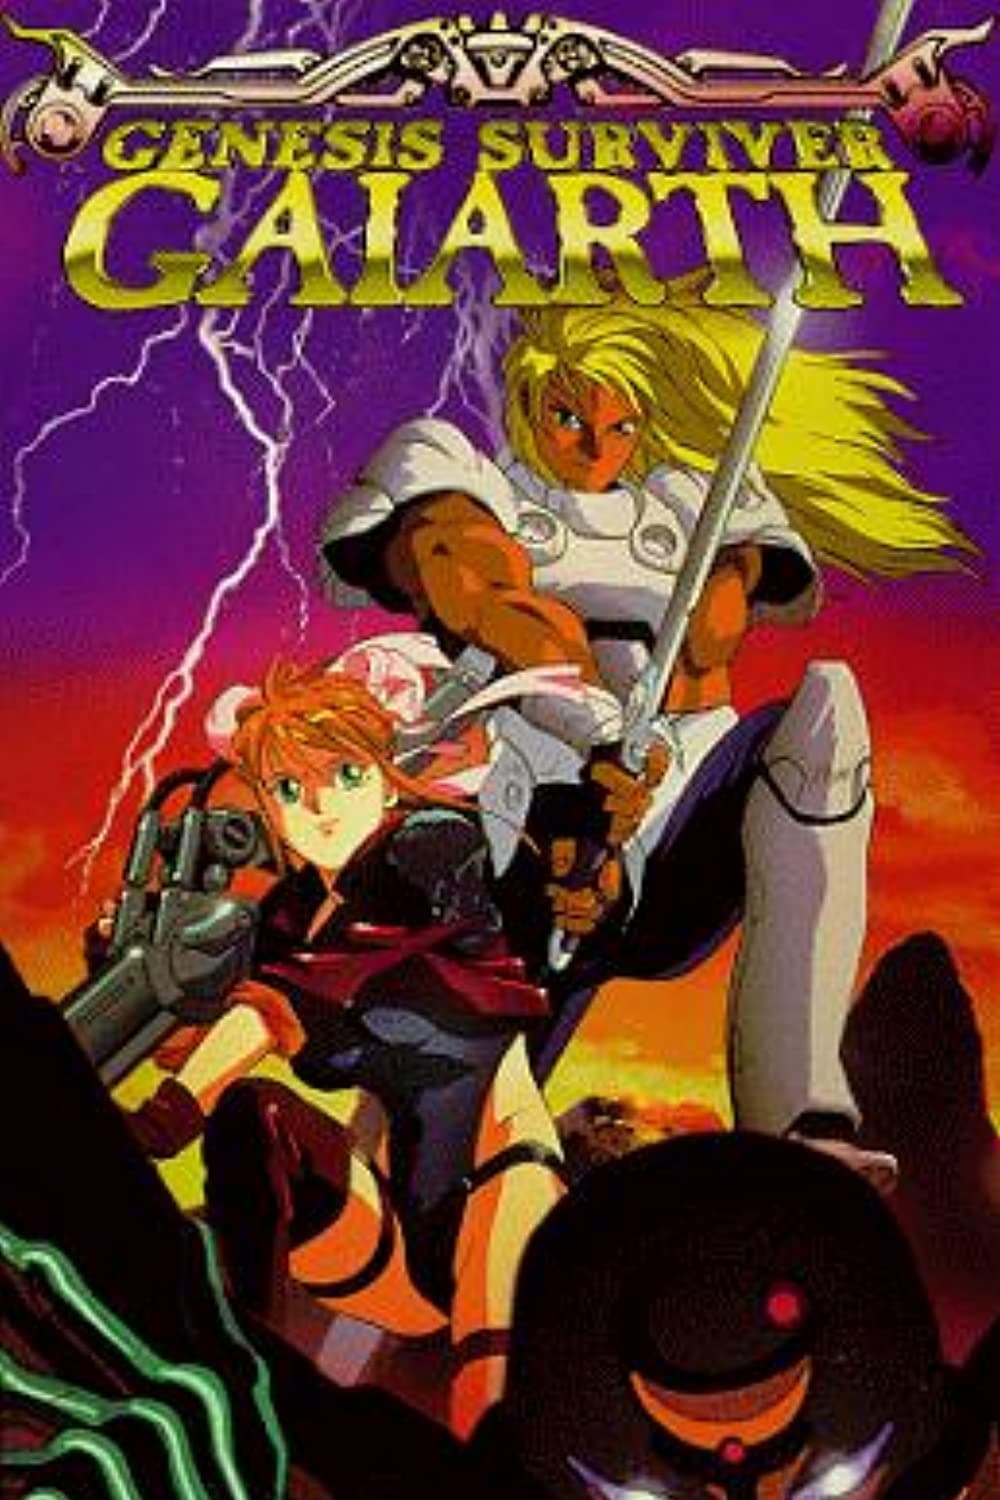 Genesis Surviver Gaiarth (1992)